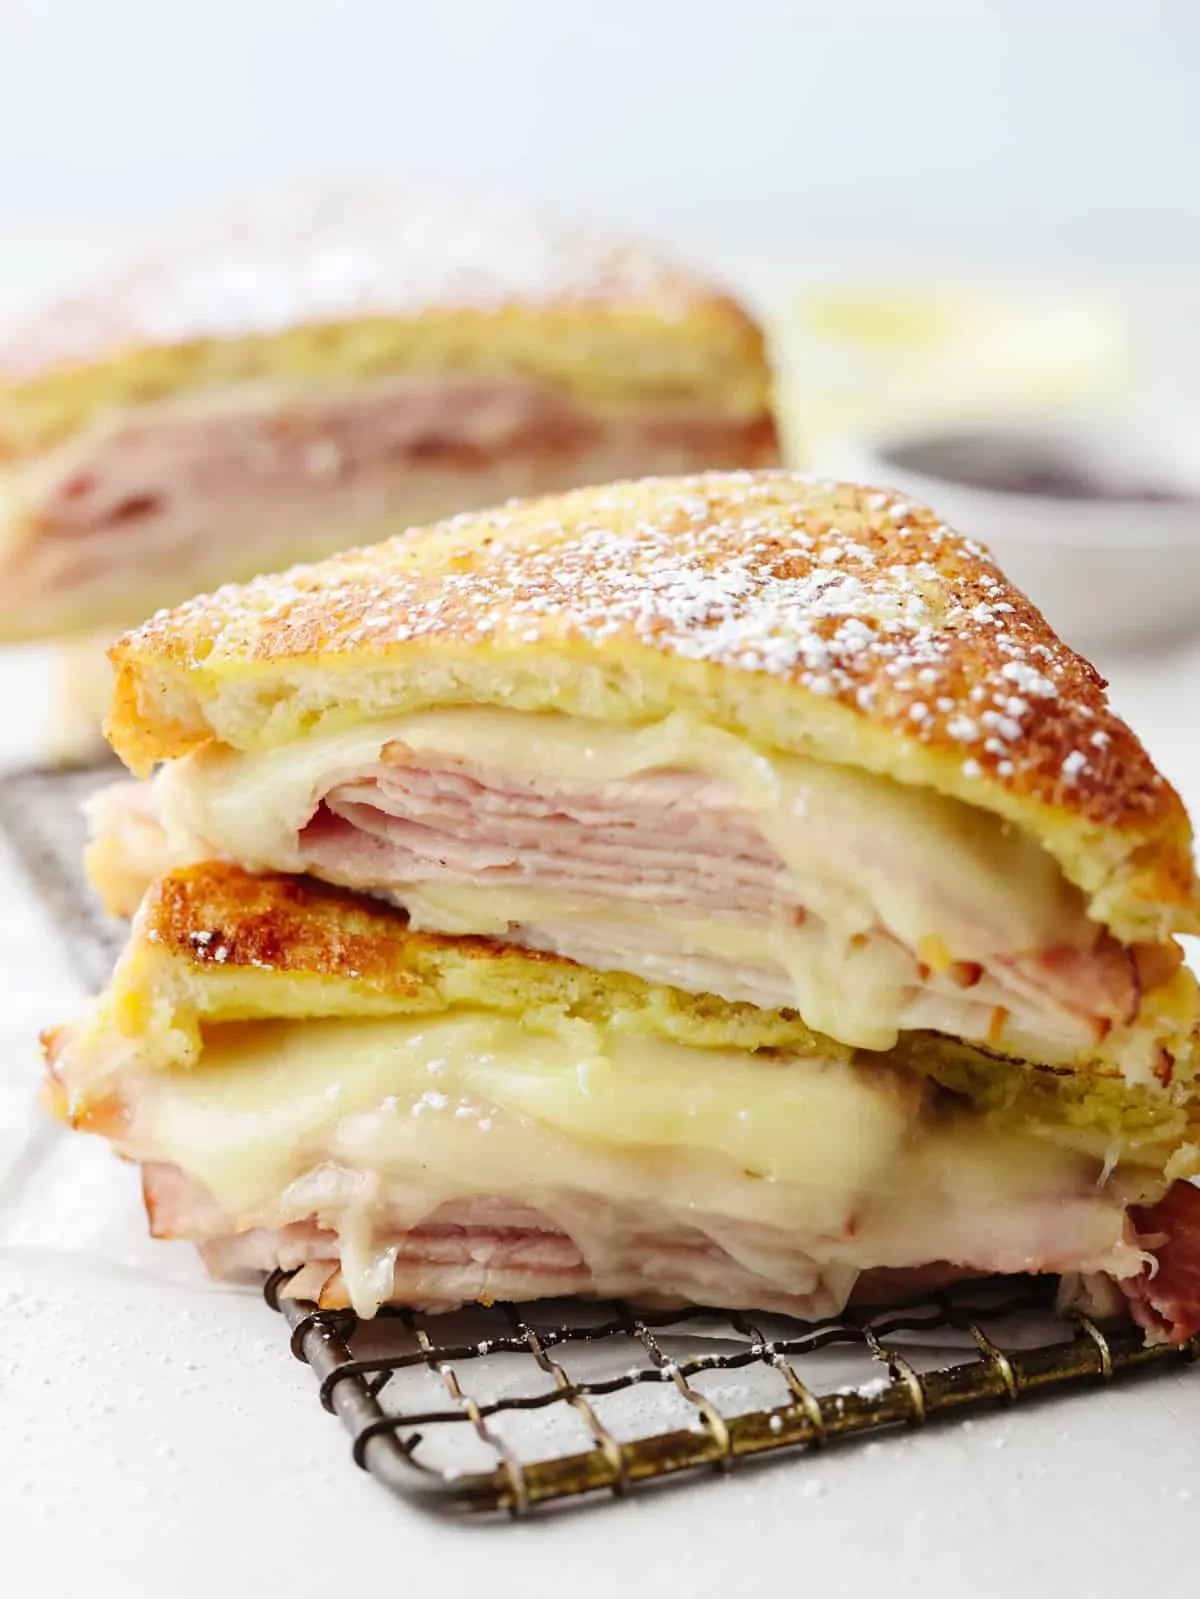 Sandwich - Kanapka Monte Cristo z serem smażonym